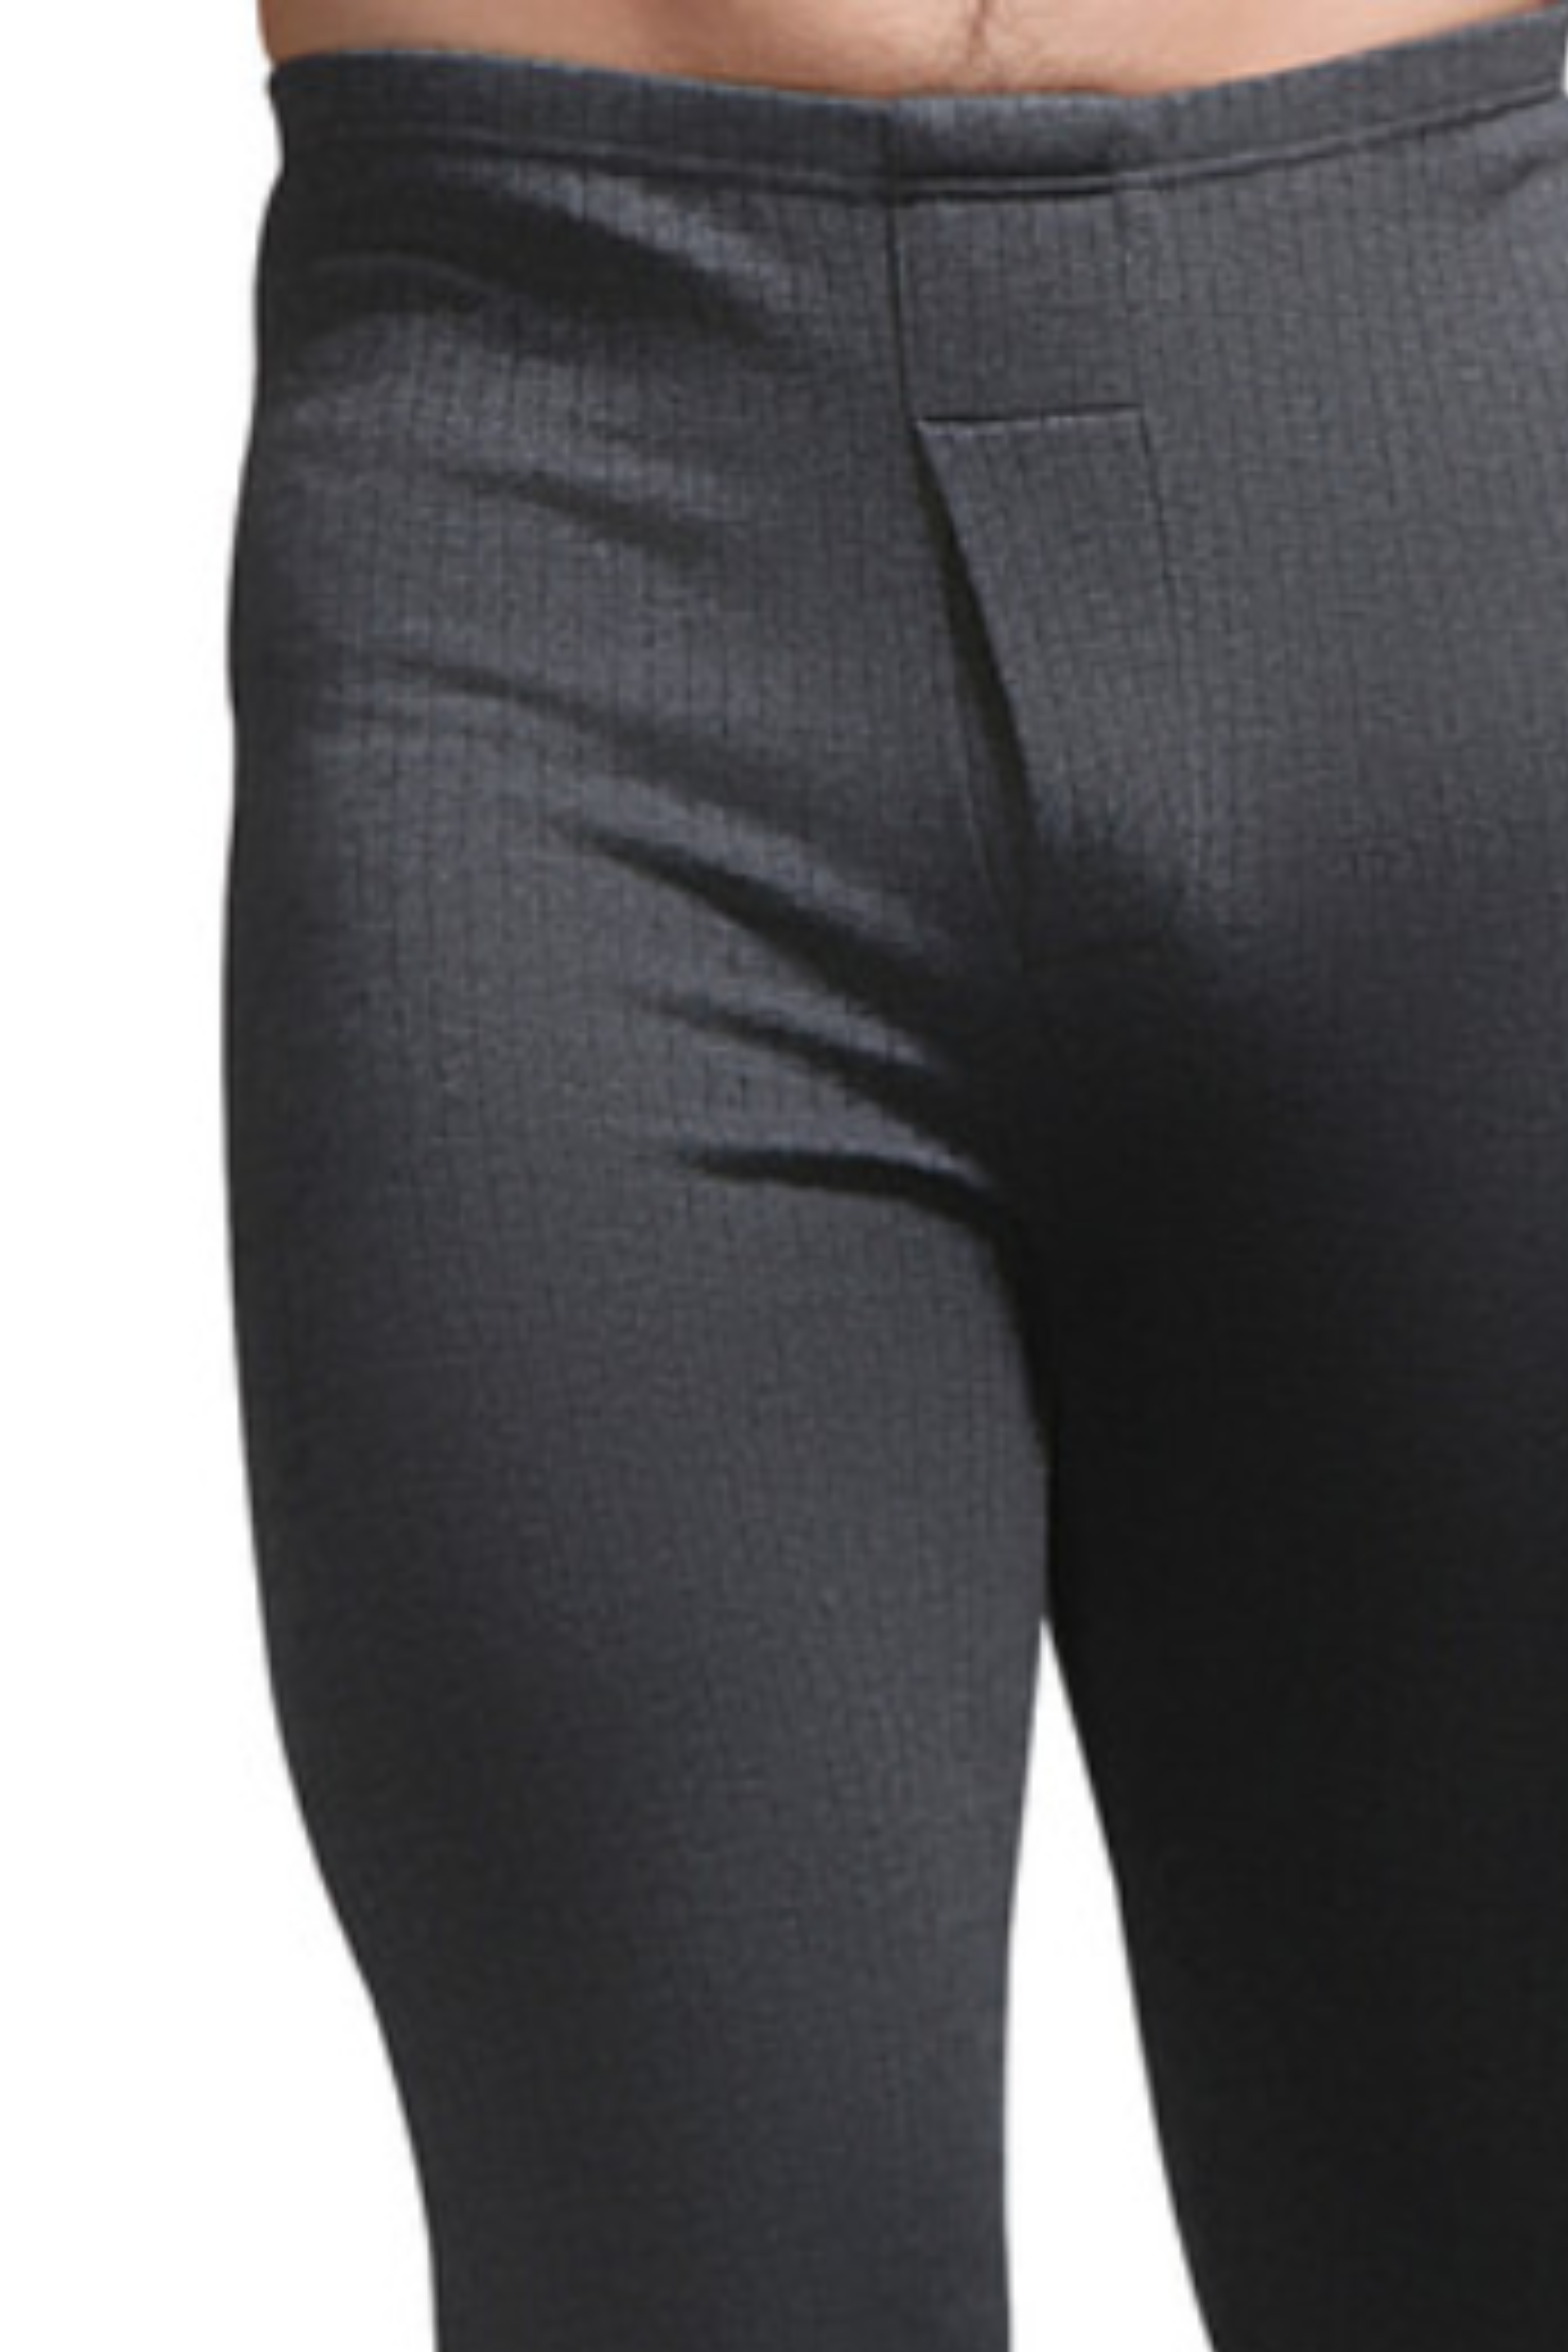 Men's Premium Thermal Trouser (Charcoal)